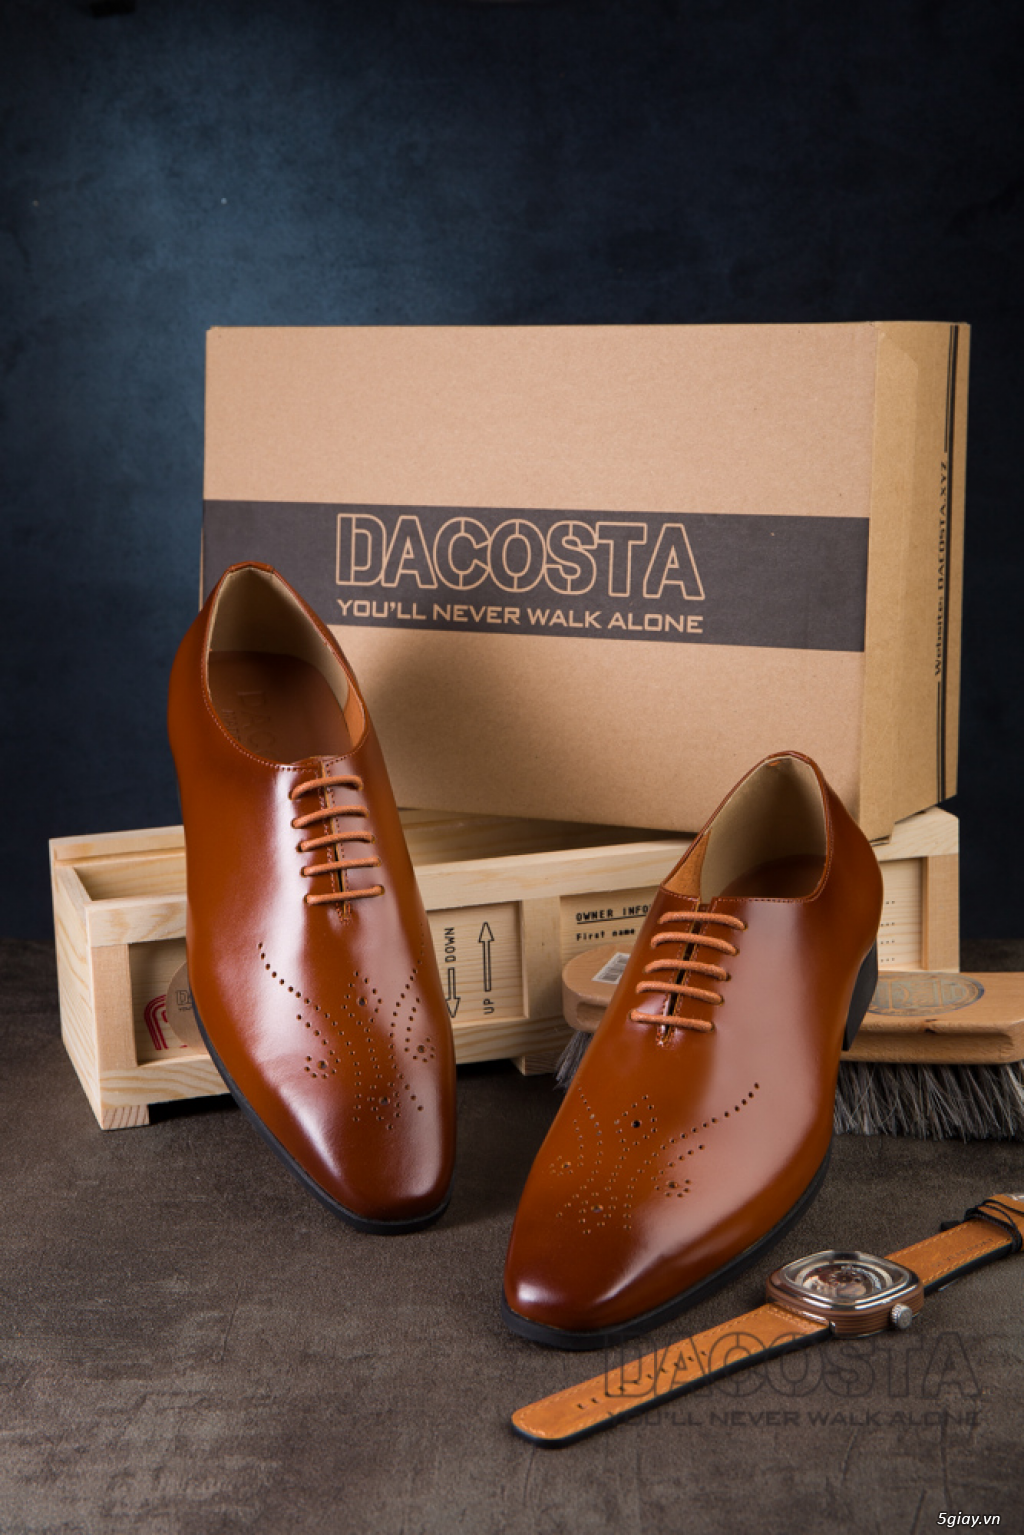 Tiệm Giày Dacosta - Những Mẫu Giày Tây Oxford Hot Nhất 2019 - 6